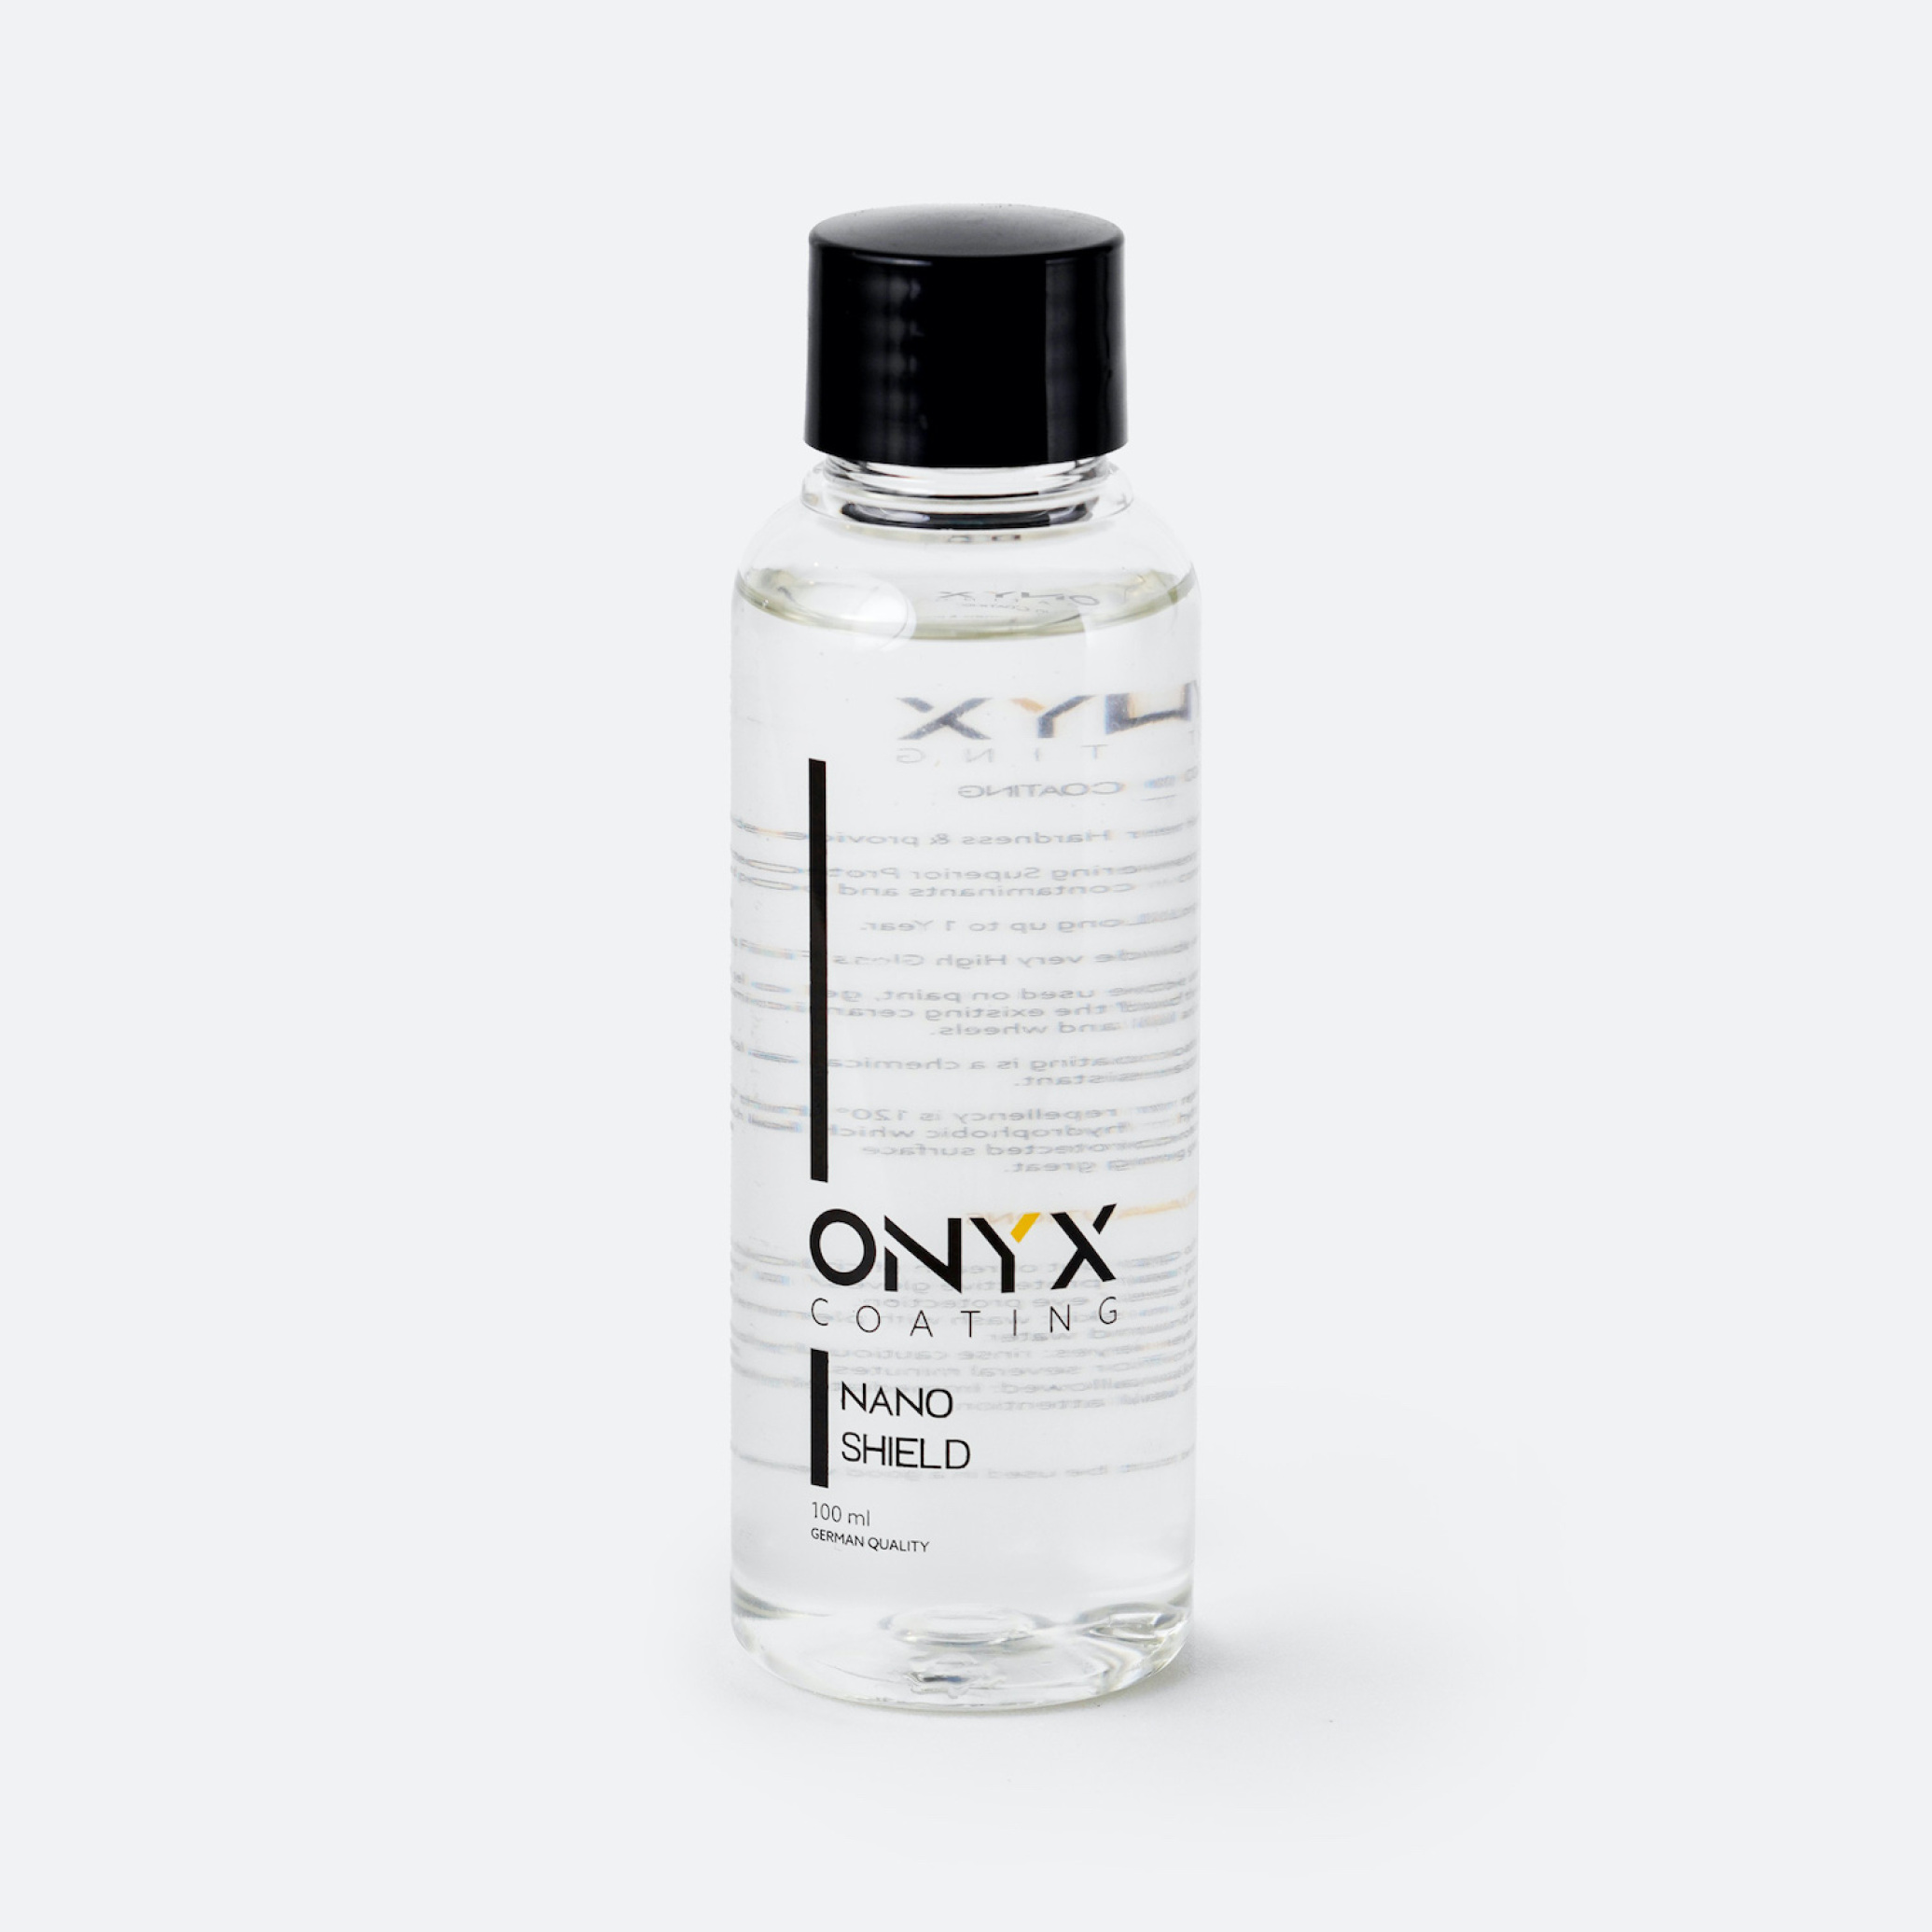  سرامیک بدنه خودرو نانو شیلد اونیکس مدل Onyx Coating Nano Shield Ceramic Coating 9H 100ml 